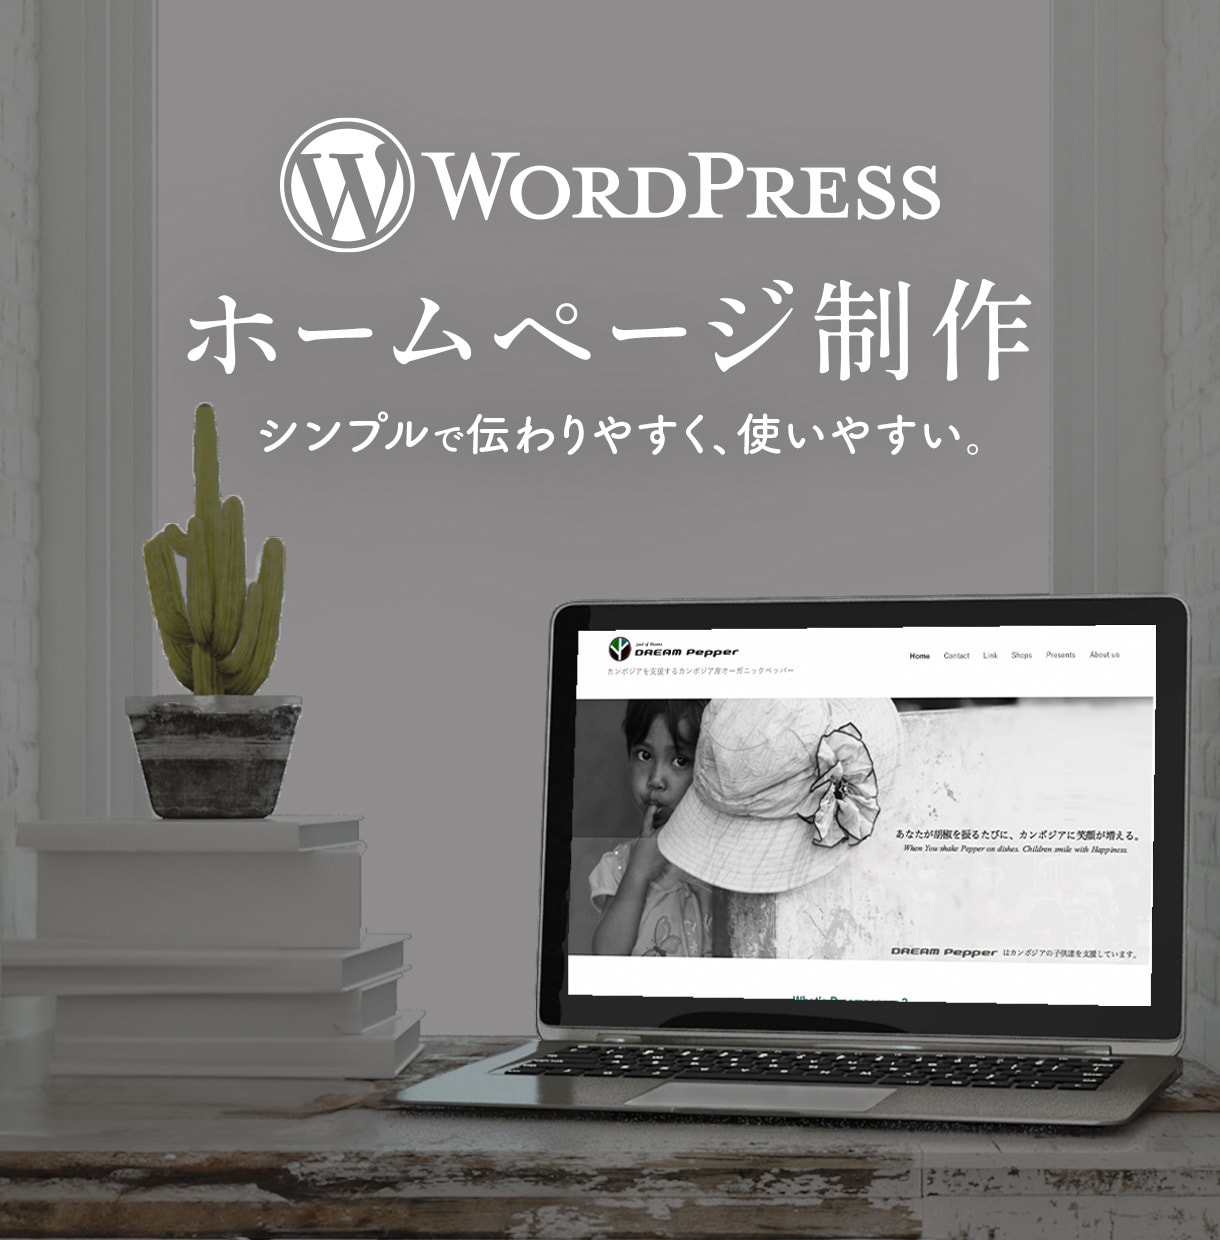 WordPressでホームページを制作いたします ワードプレスで本格的なHP｜有料画像・素材3枚までサービス！ イメージ1